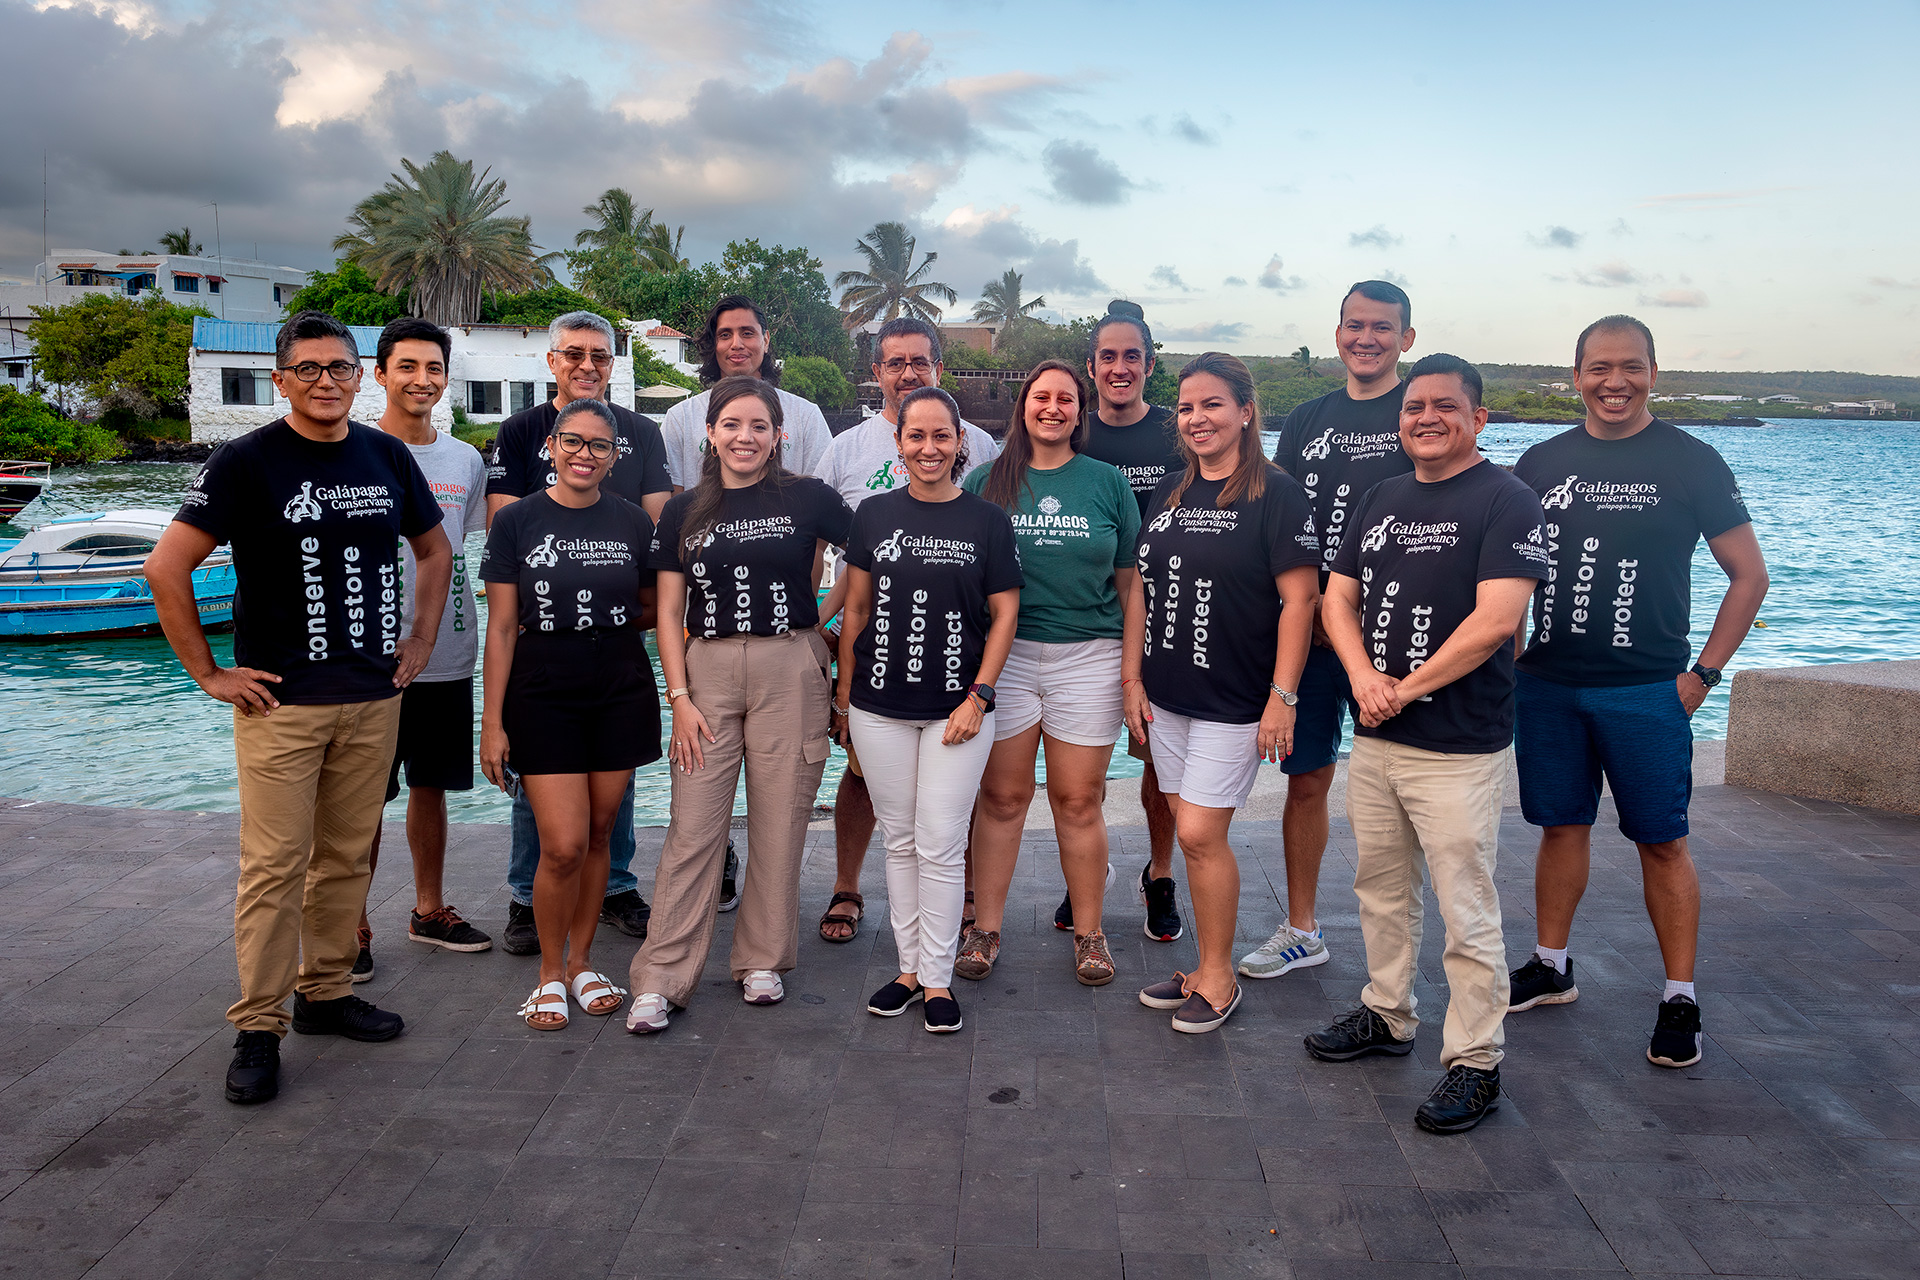 Team Conservando Galápagos